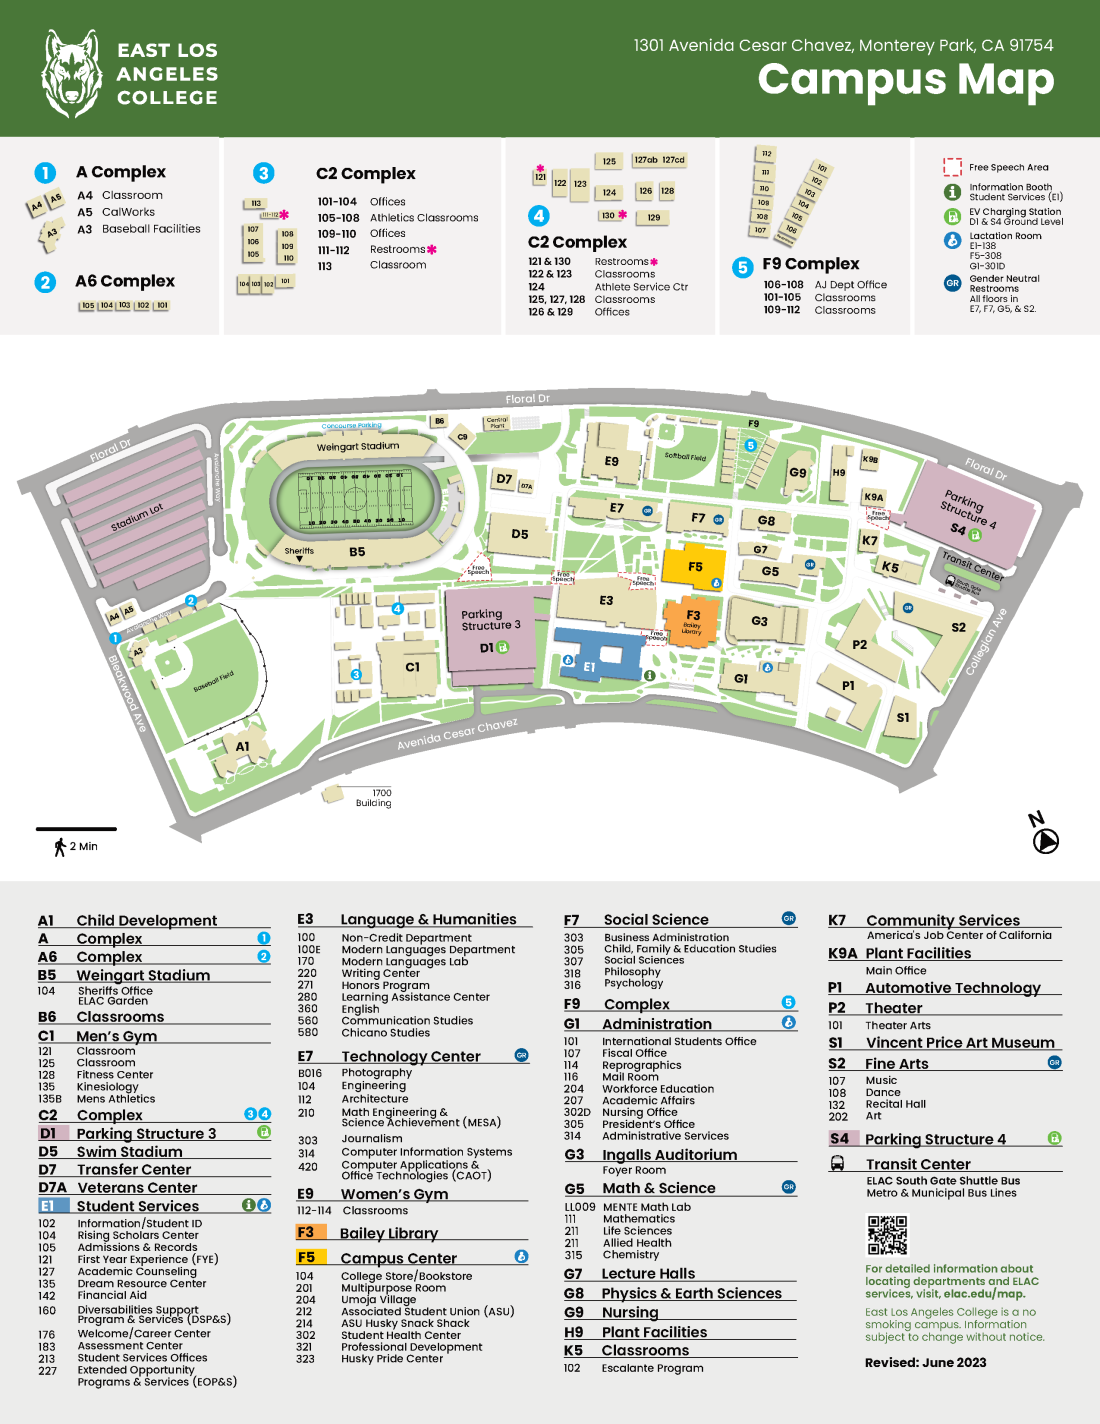 ELAC Campus Map_June 2023